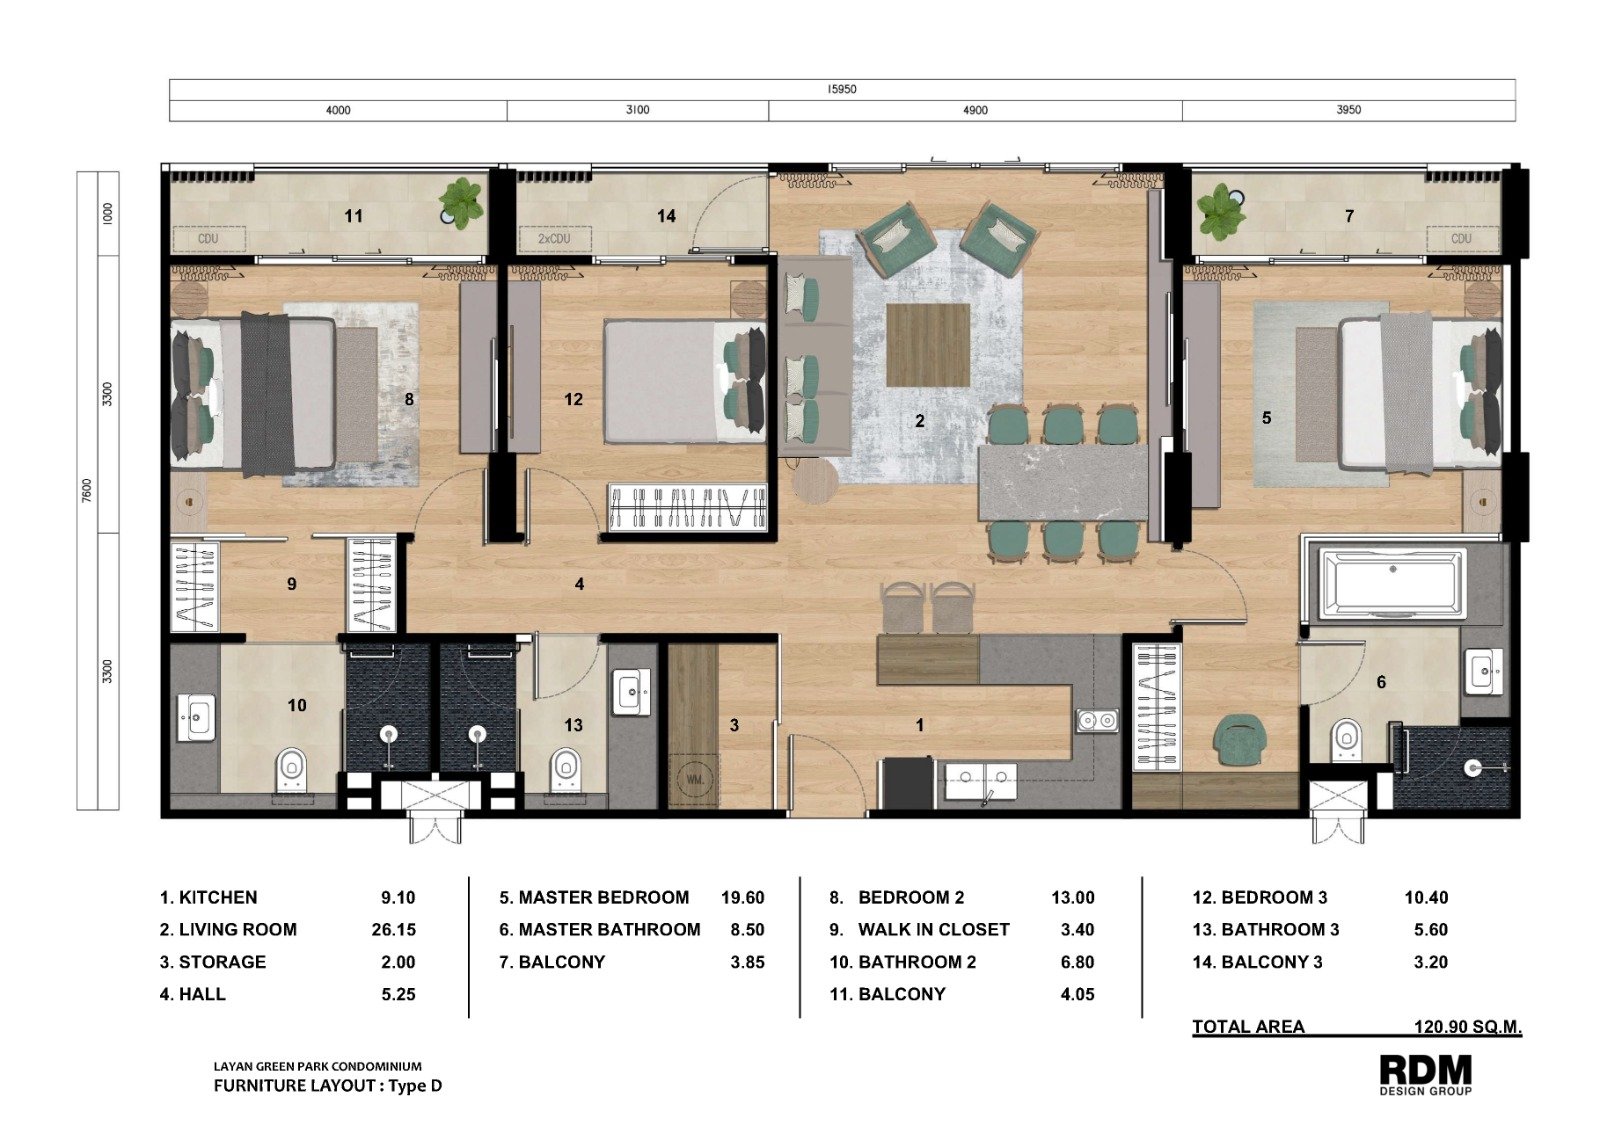 Floor Plan - 3-Bedroom Type D